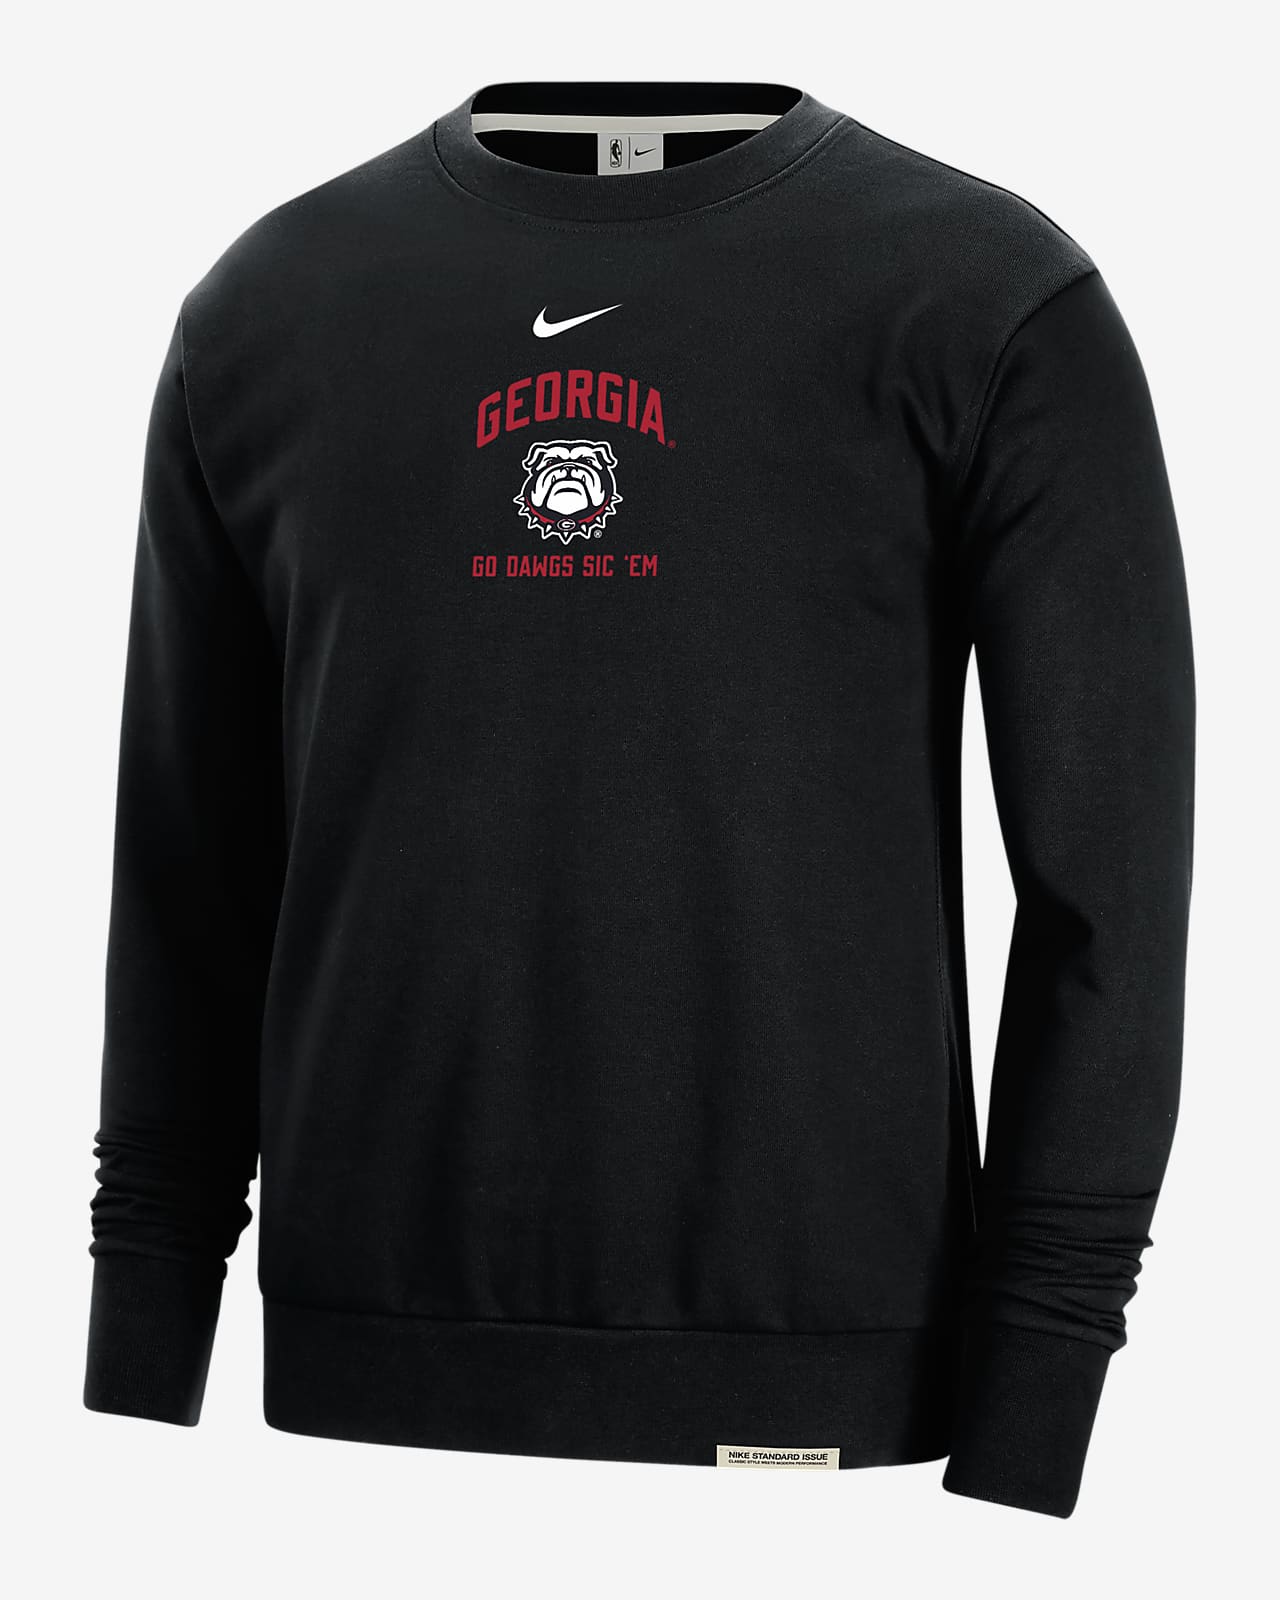 Georgia Standard Issue Men's Nike College Fleece Crew-Neck Sweatshirt